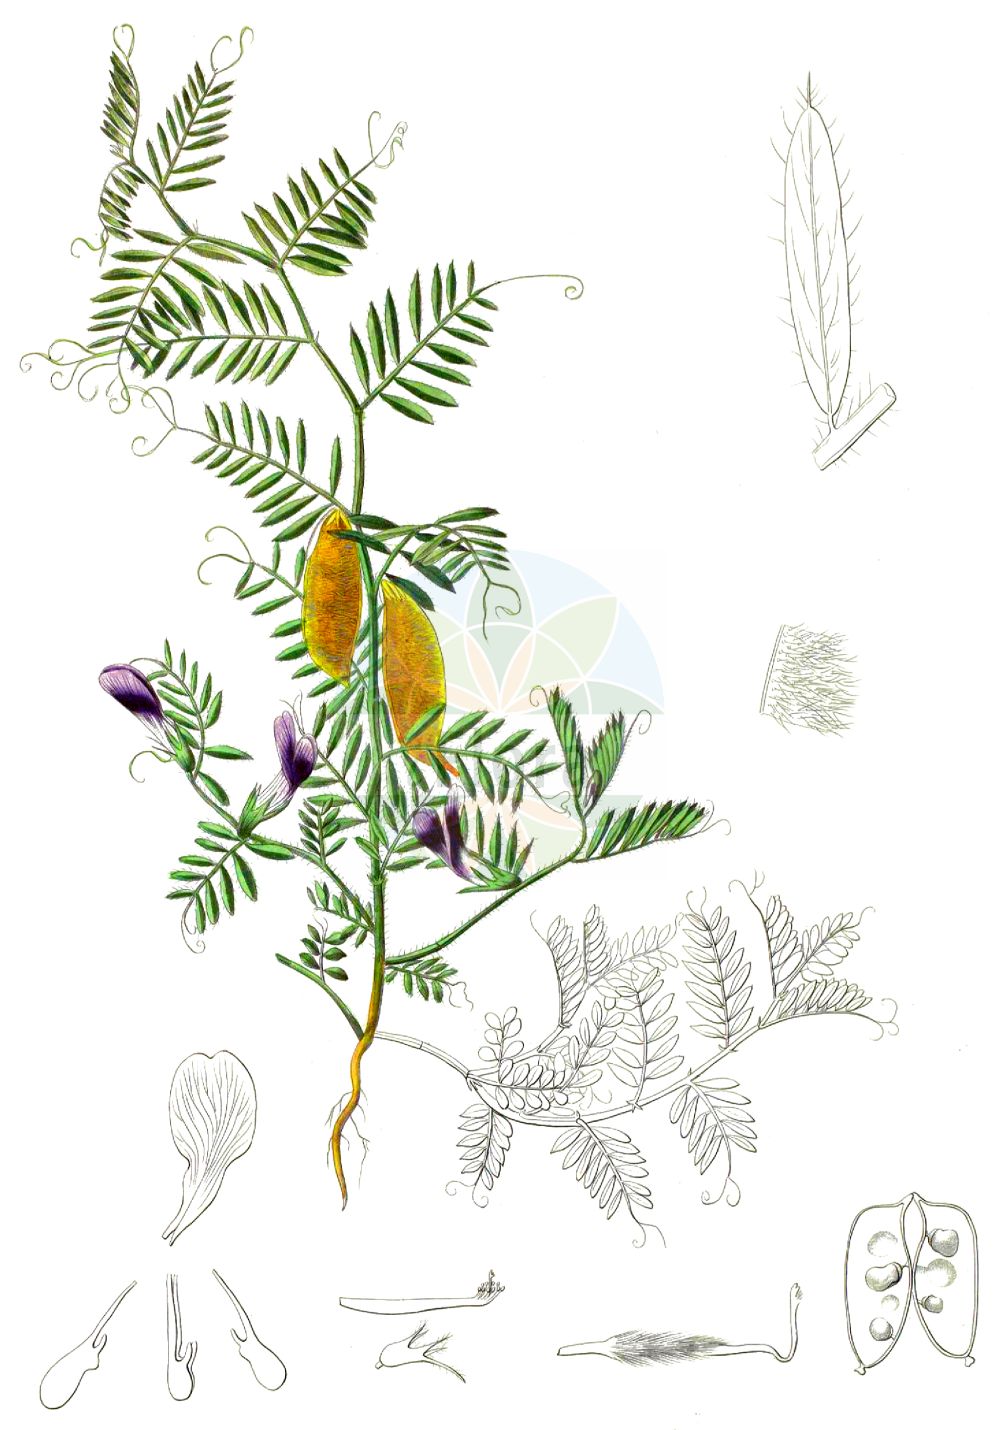 Historische Abbildung von Vicia lutea (Gelbe Wicke - Yellow-vetch). Das Bild zeigt Blatt, Bluete, Frucht und Same. ---- Historical Drawing of Vicia lutea (Gelbe Wicke - Yellow-vetch). The image is showing leaf, flower, fruit and seed.(Vicia lutea,Gelbe Wicke,Yellow-vetch,Hypechusa lutea,Vicia ciliata,Vicia lineata,Vicia lutea,Vicia lutea subsp. cavanillesii,Gelbe Wicke,Yellow-vetch,Smooth Yellow Vetch,Vicia,Wicke,Vetch,Fabaceae,Schmetterlingsblütler,Pea family,Blatt,Bluete,Frucht,Same,leaf,flower,fruit,seed)